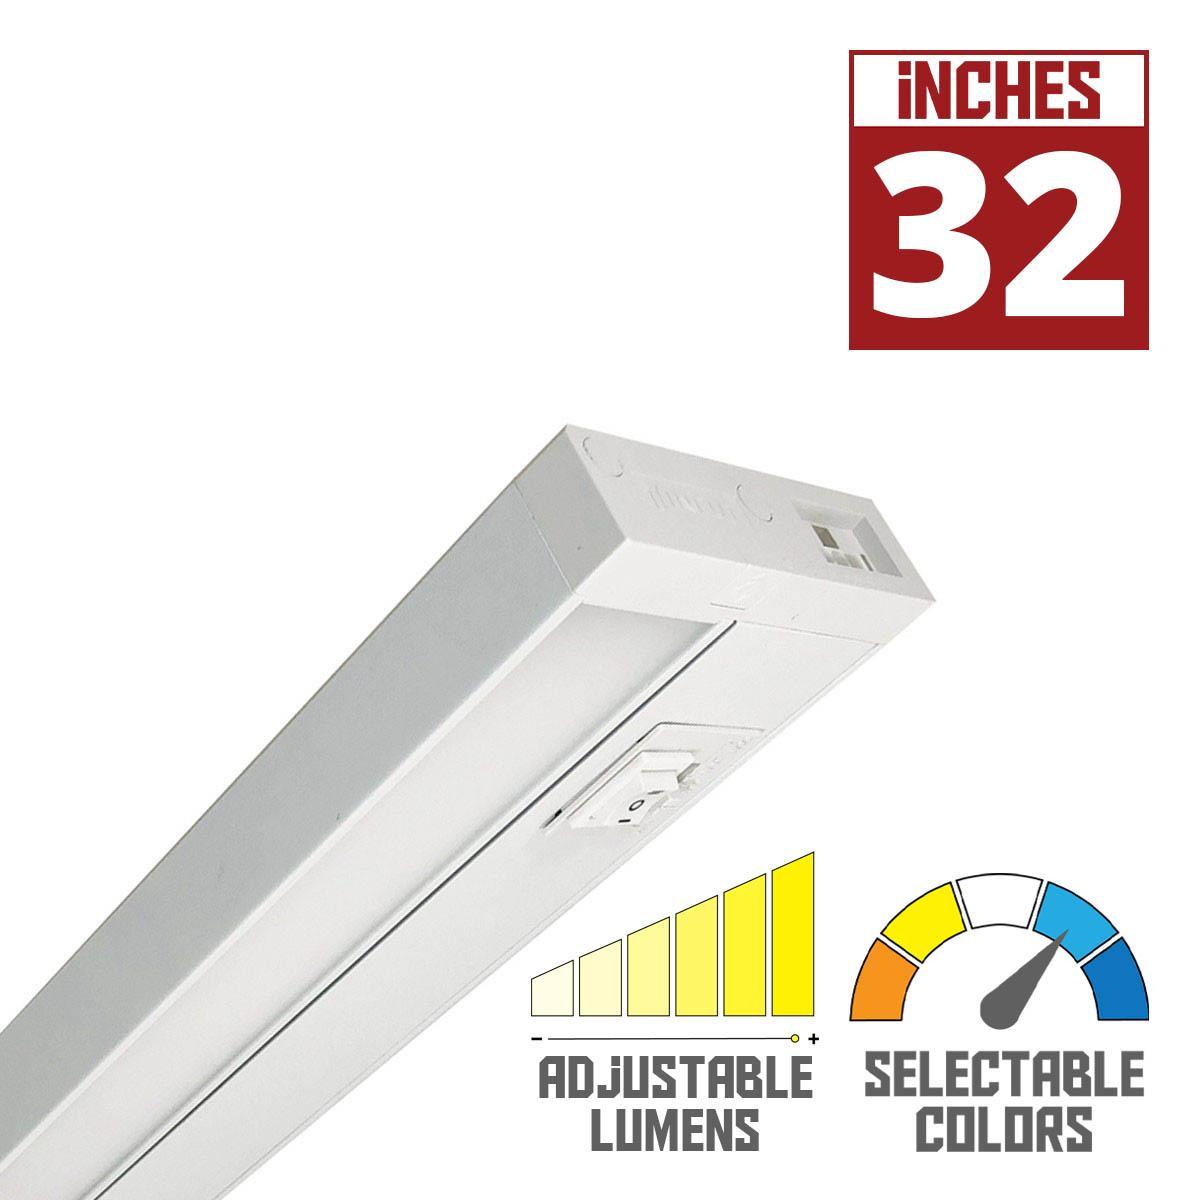 LEDUR TW 32 Inch EdgeLit Under Cabinet LED Light, Linkable, Adjustable Lumens 275/ 475 Lm, Field Selectable CCT 2700K to 5000K, 120V